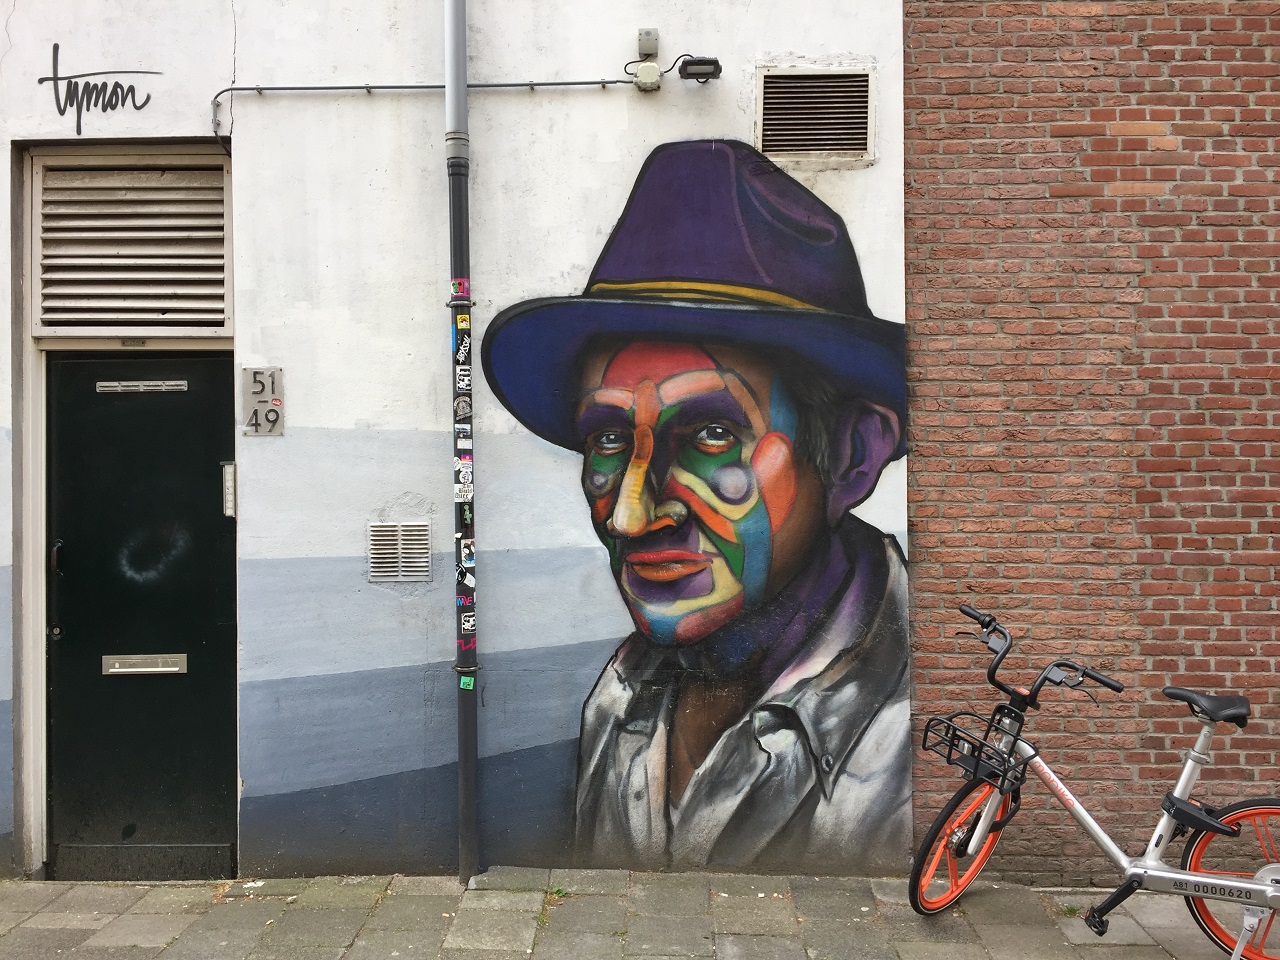 Rotterdam Street Art by Tymon "Mr Merida"